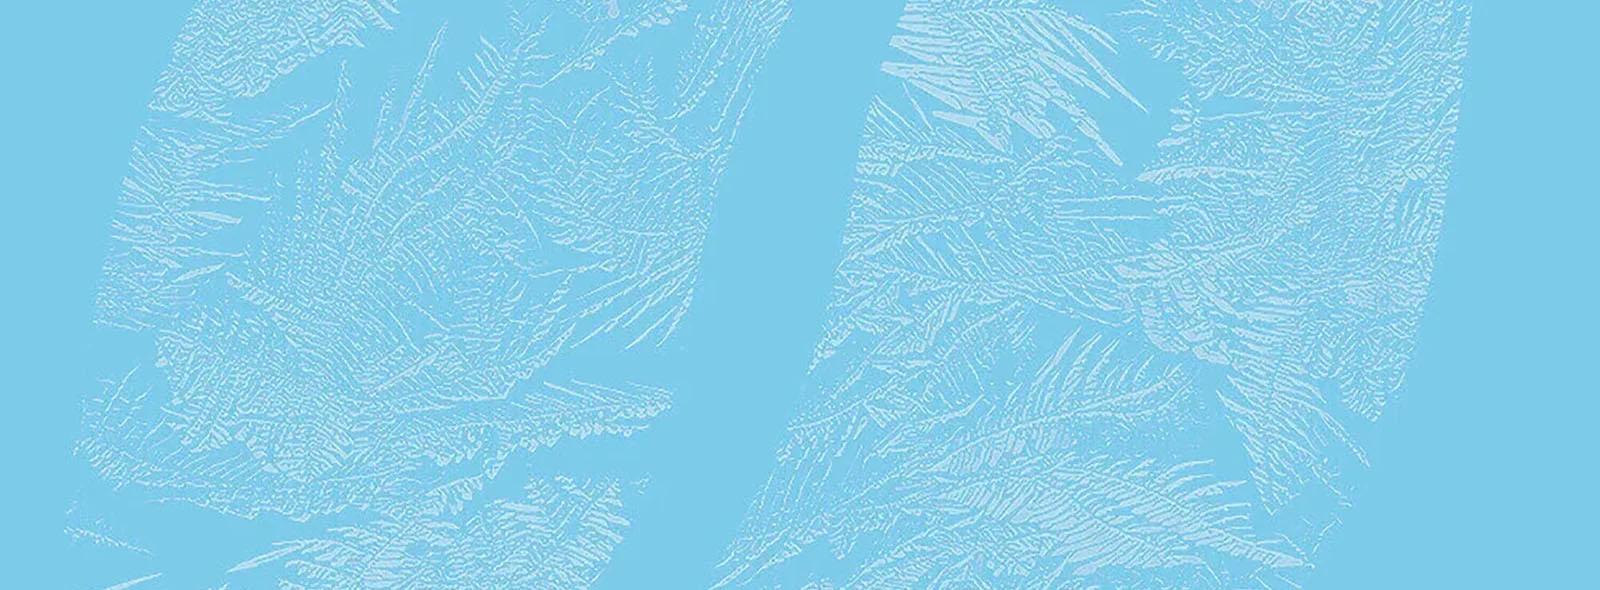 frozen-pattern-blue-background-desktop